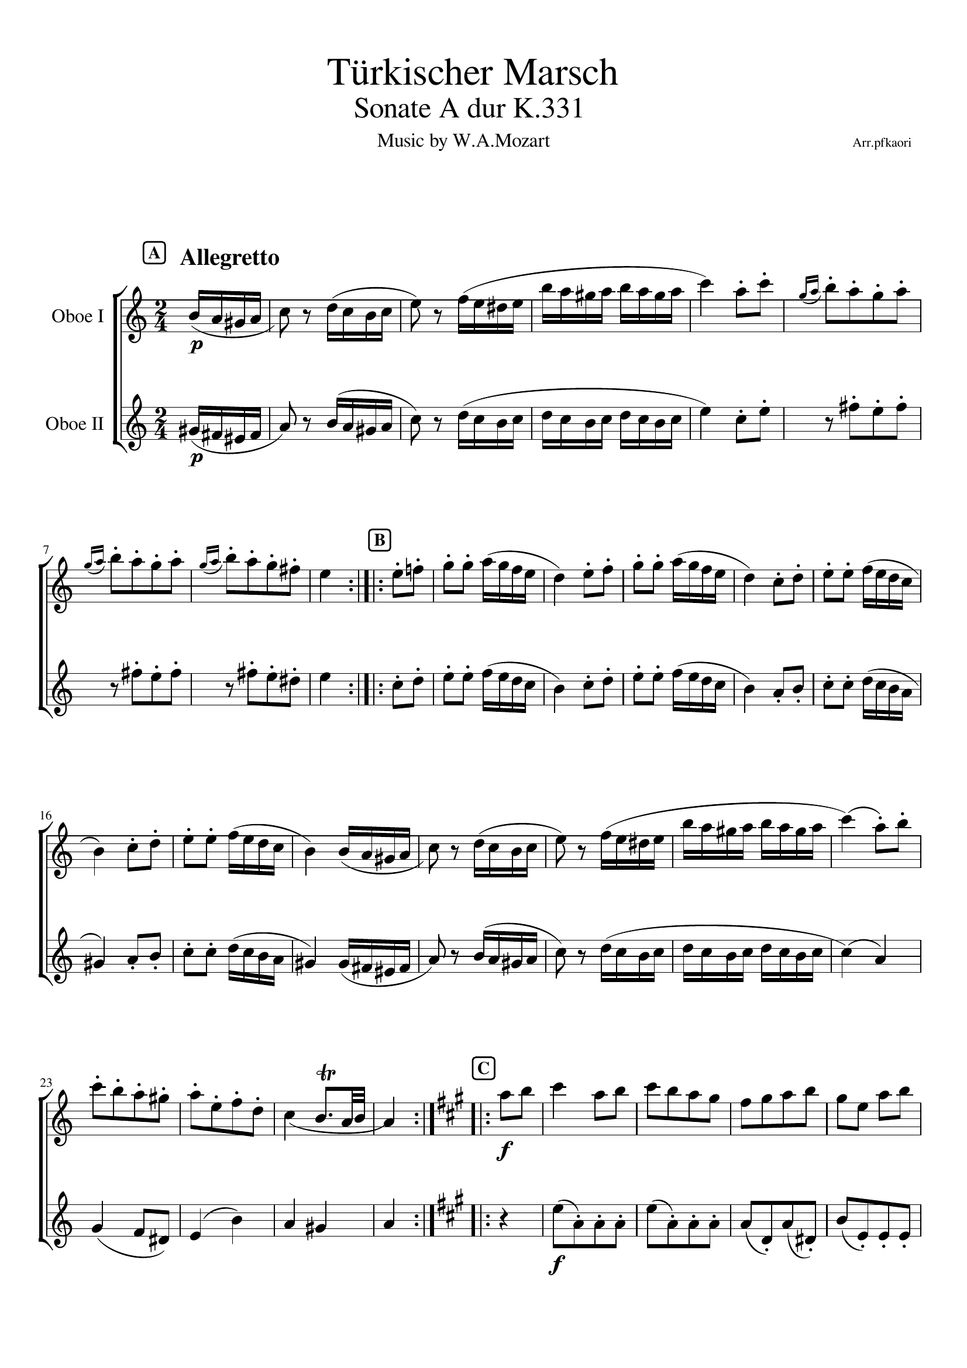 モーツァルト - トルコ行進曲 (オーボエデュオ/無伴奏) by pfkaori